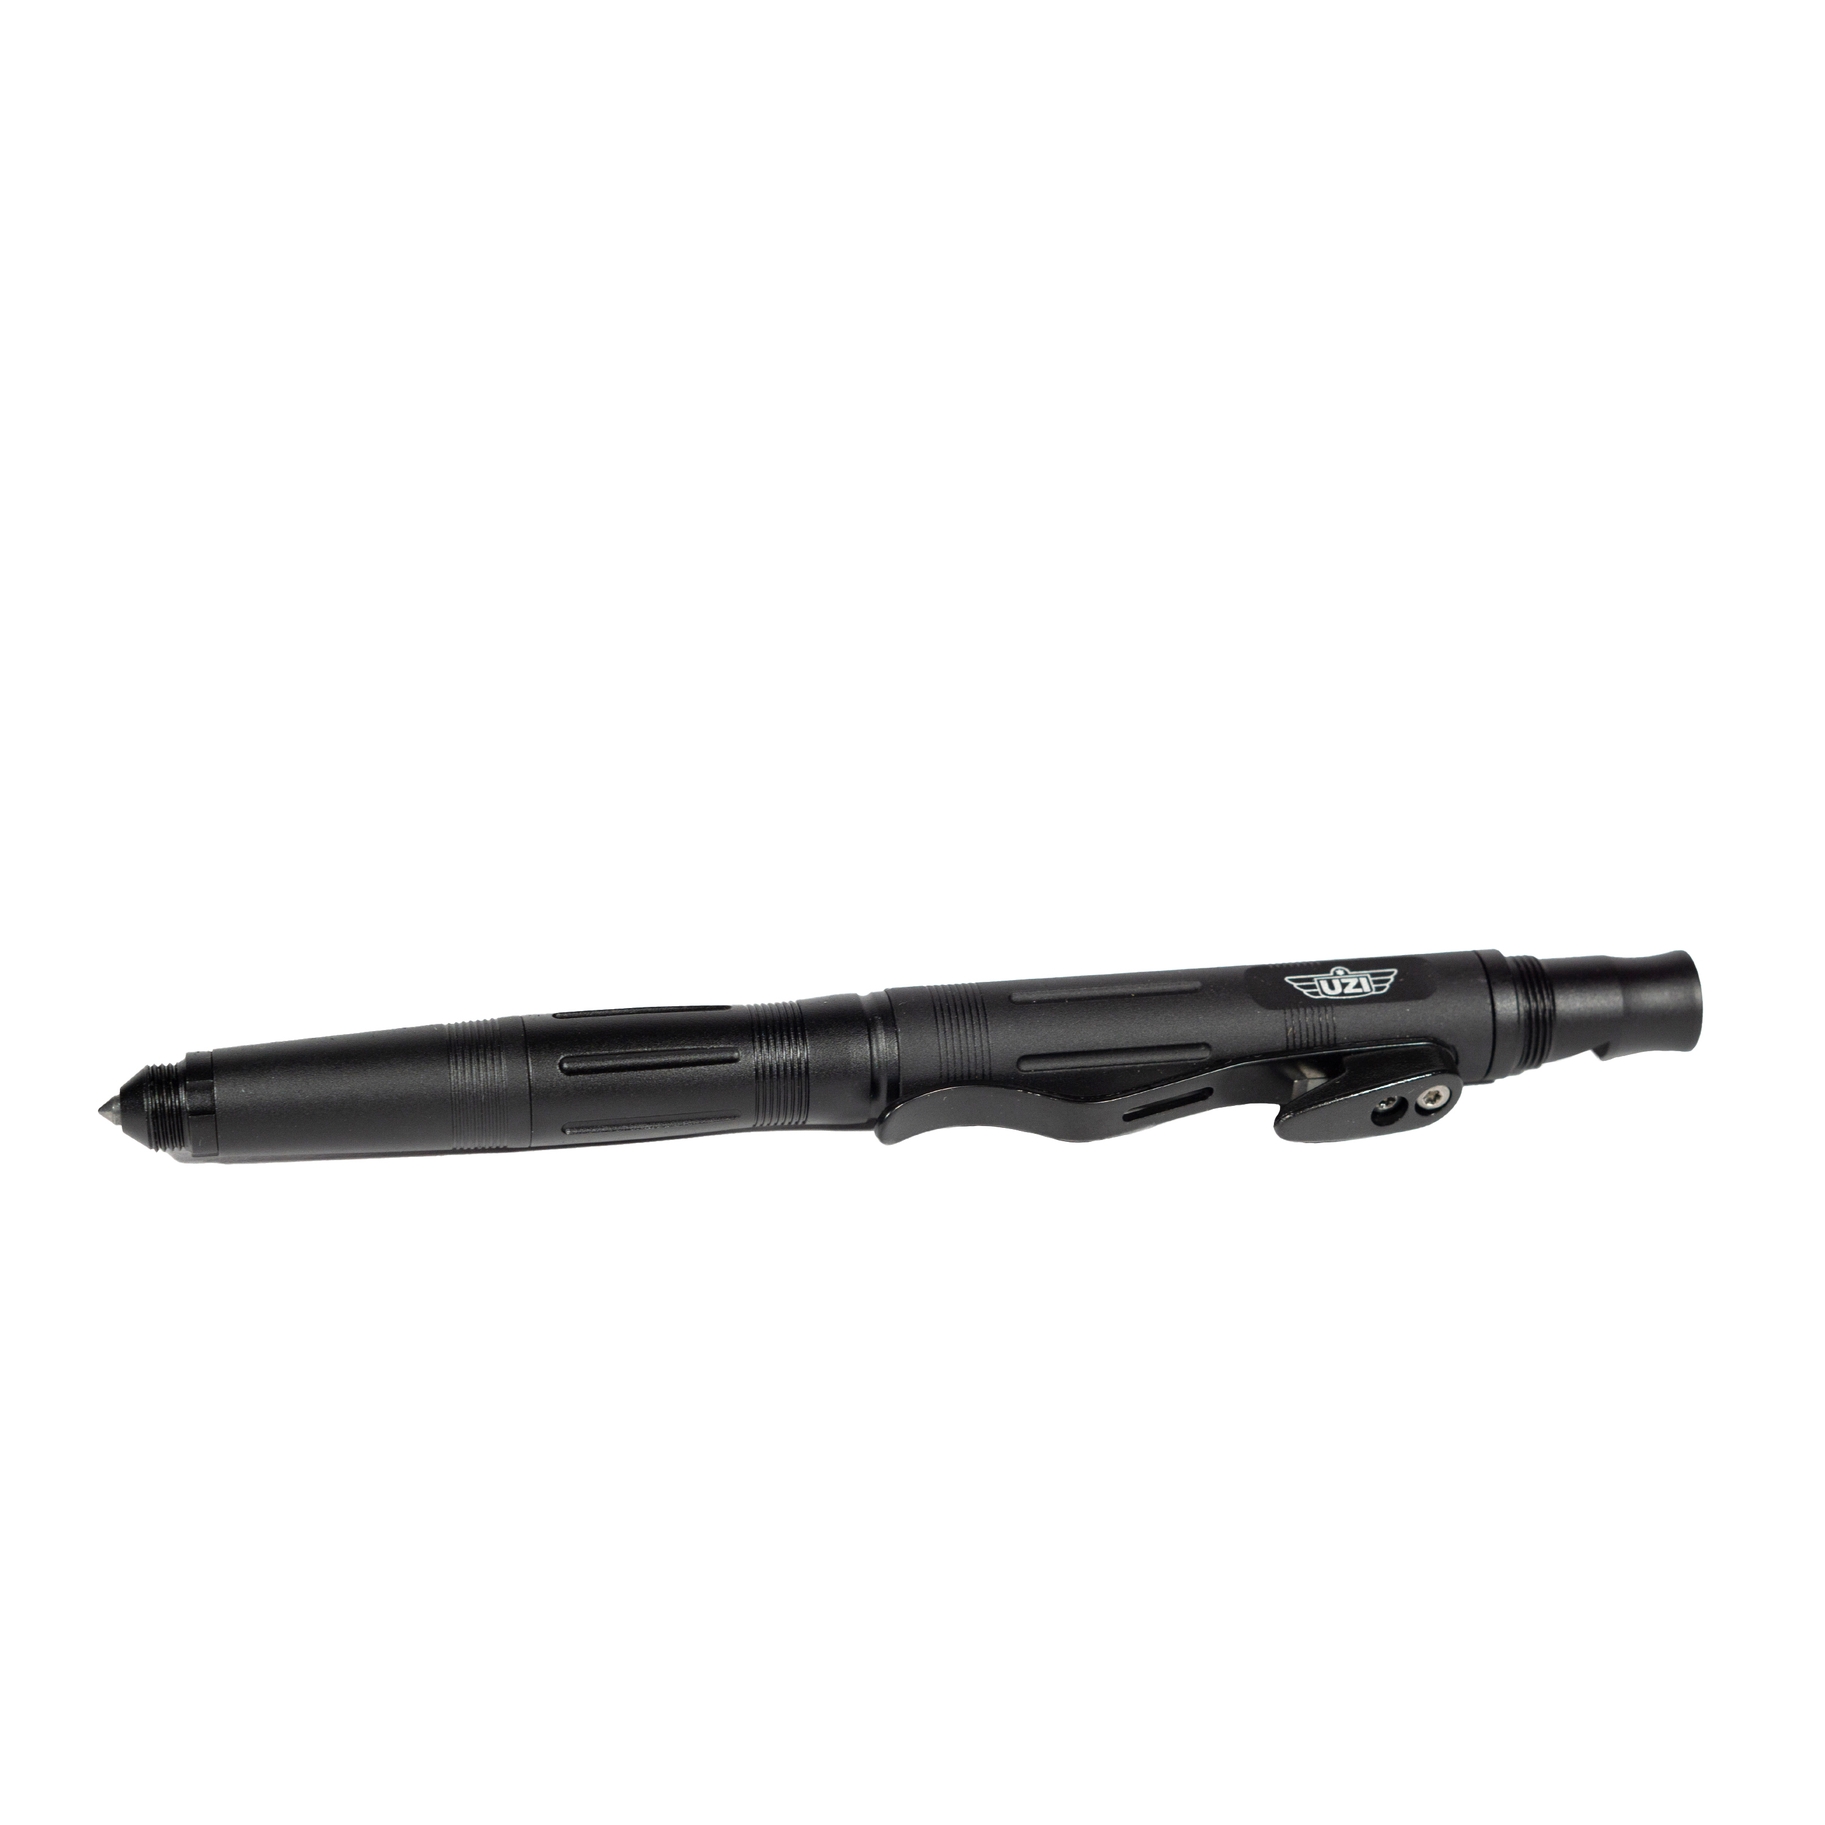 Caliber Gourmet - UZI Multi-tool pen - Black